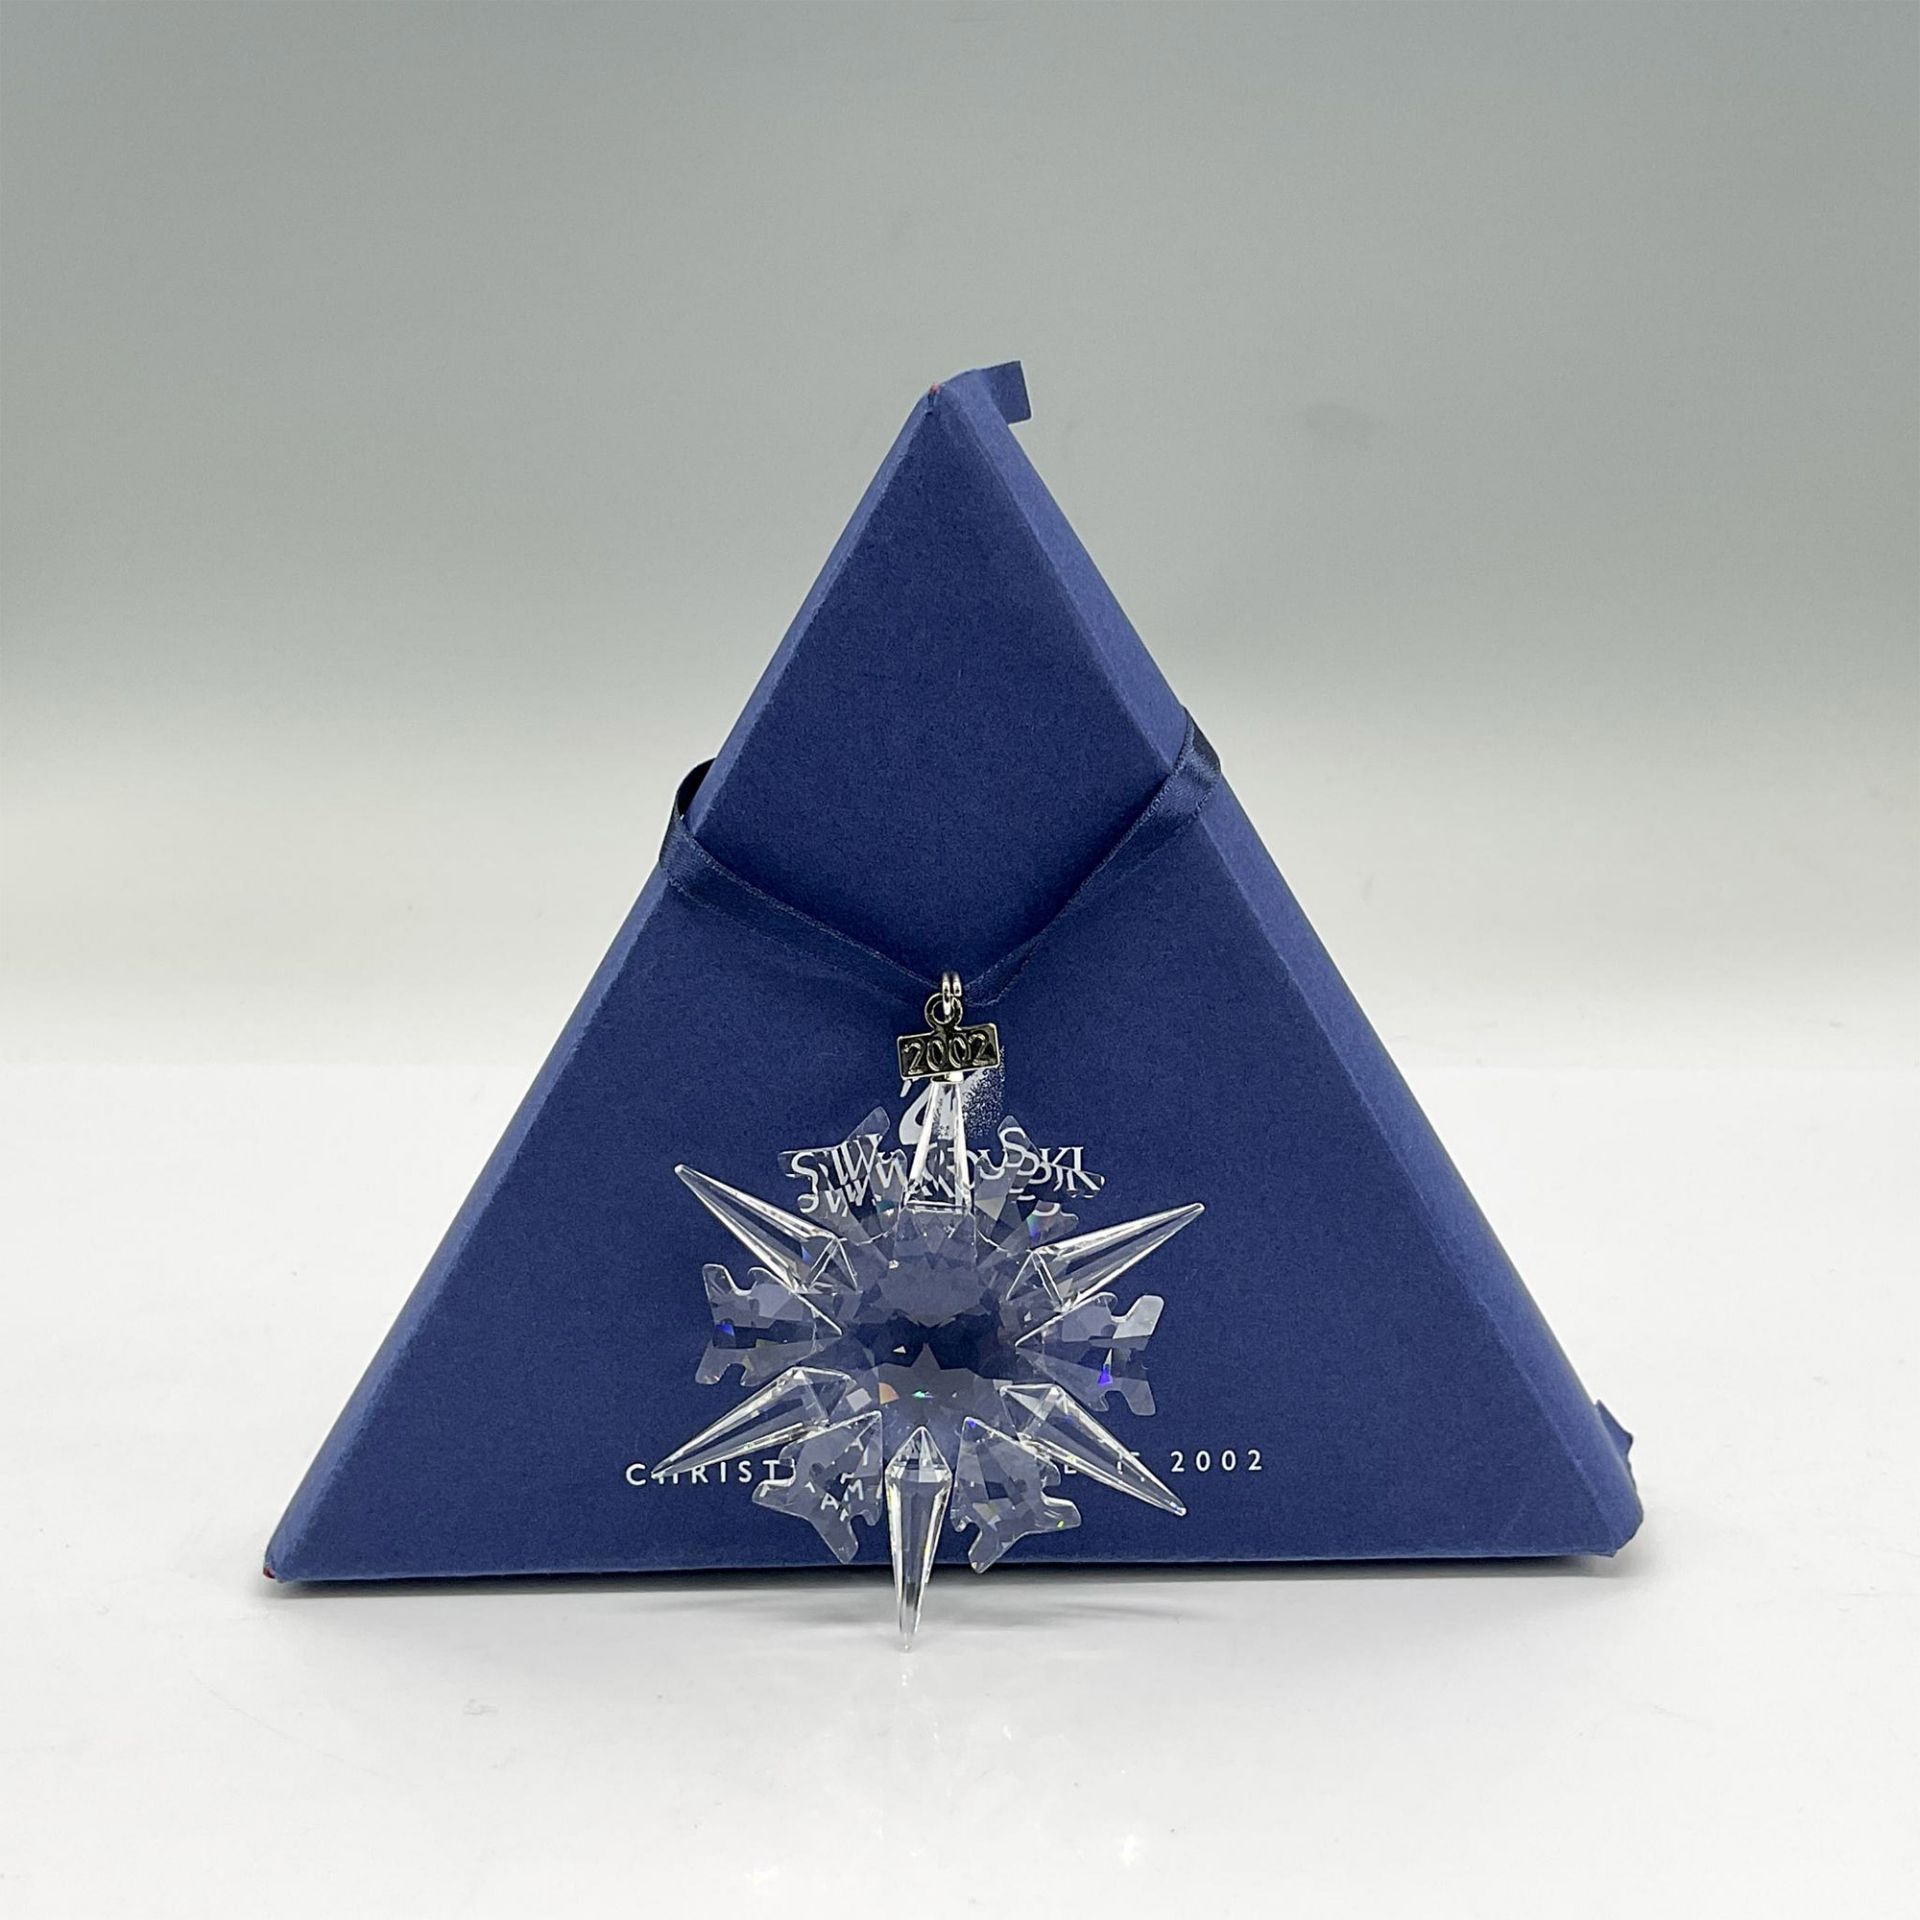 Swarovski Crystal Christmas Ornament 2002 - Image 3 of 3